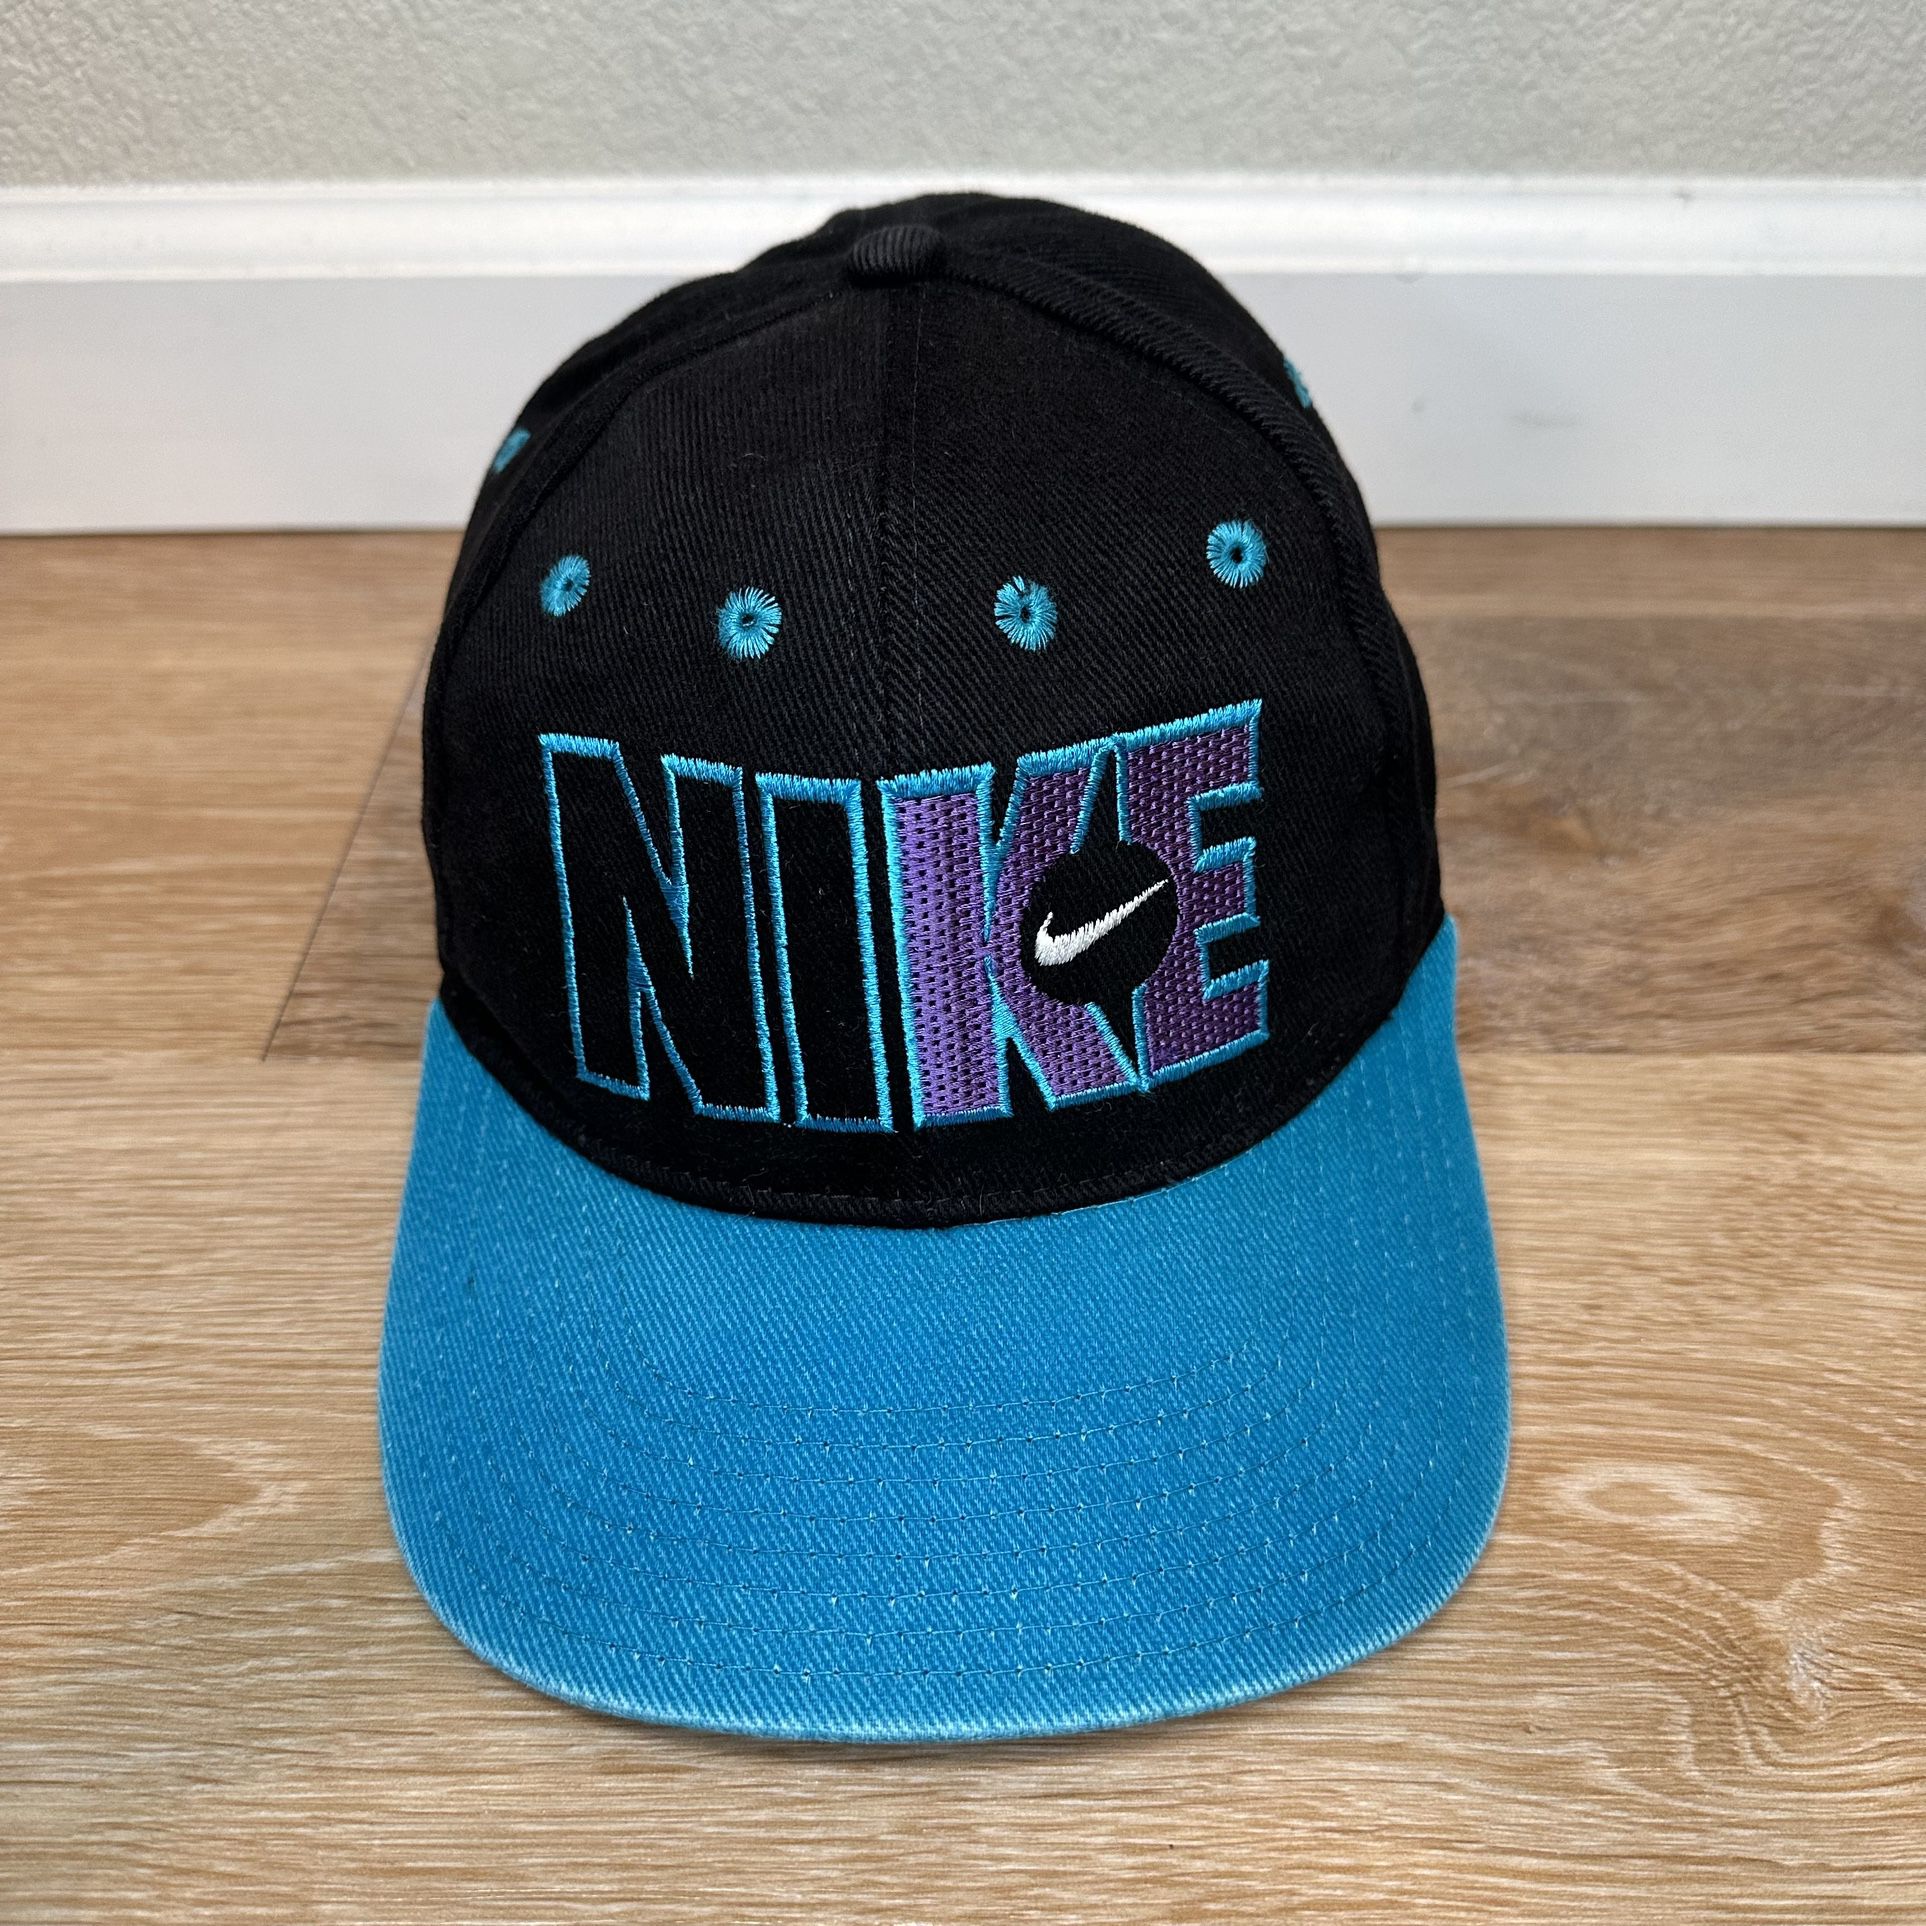 Nike Vintage Just Do it Black Blue Snapback Hat